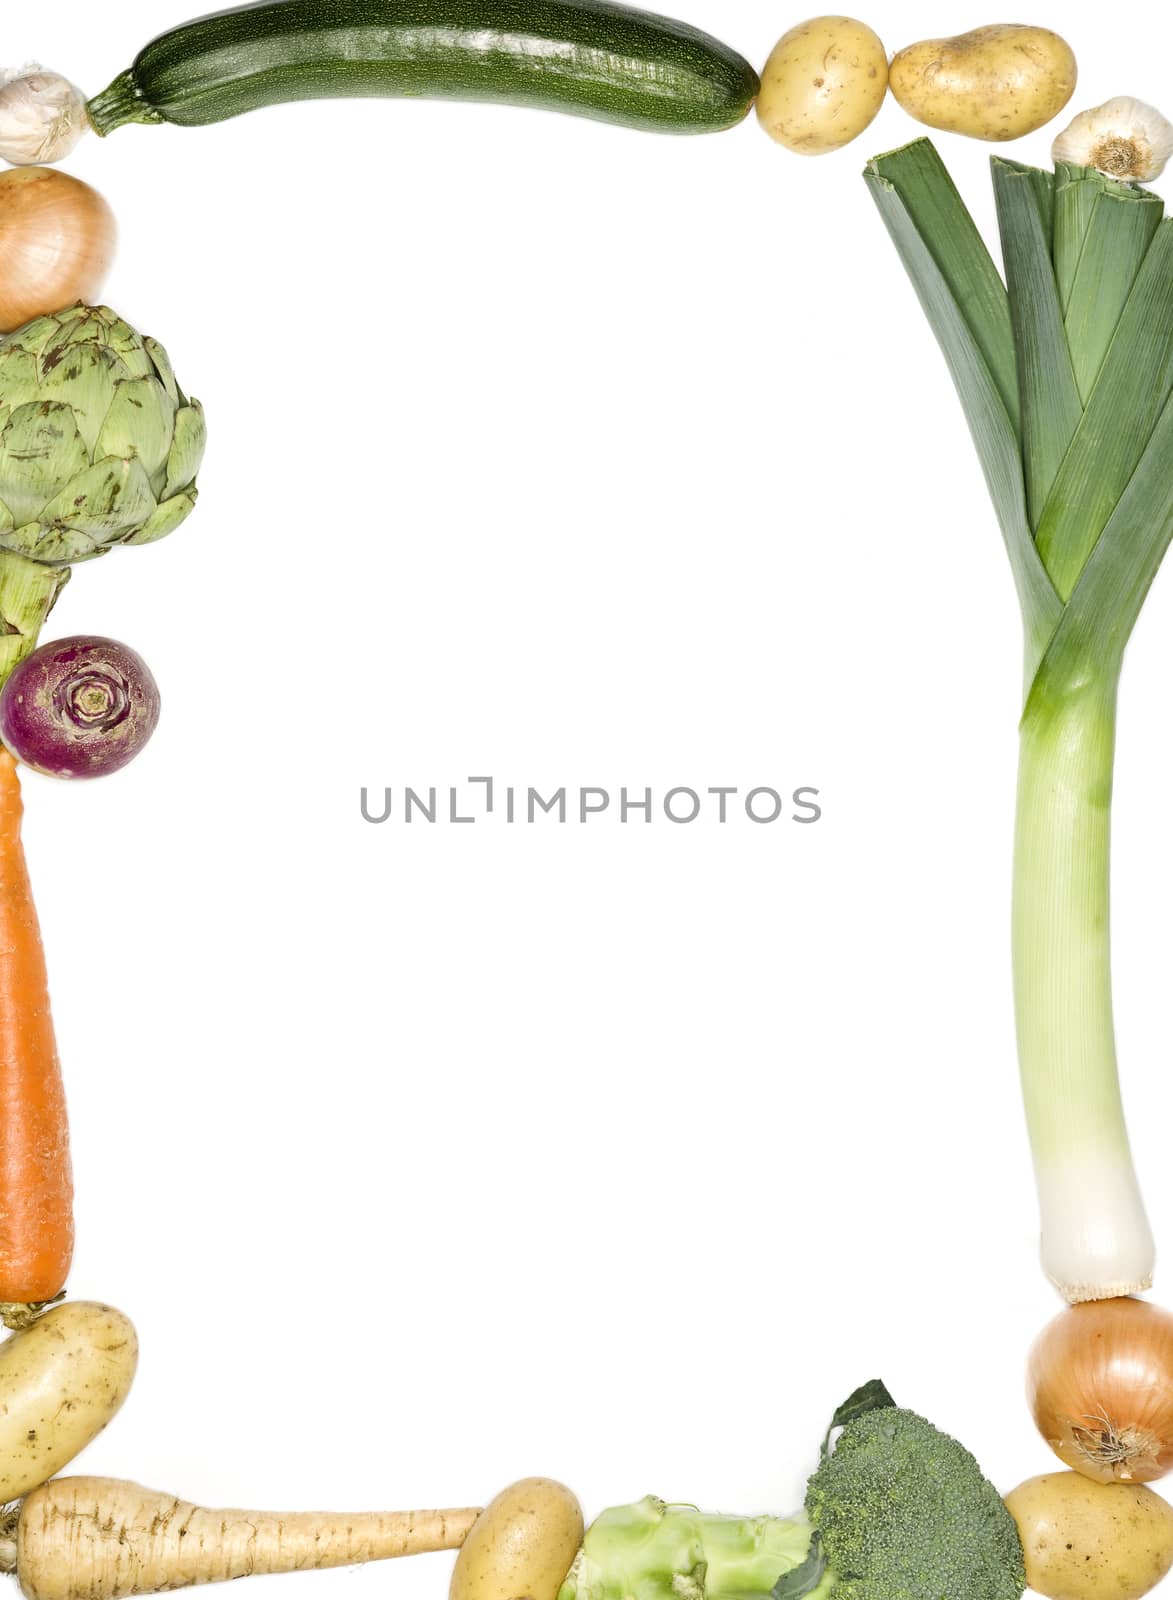 Vegetables by gemenacom